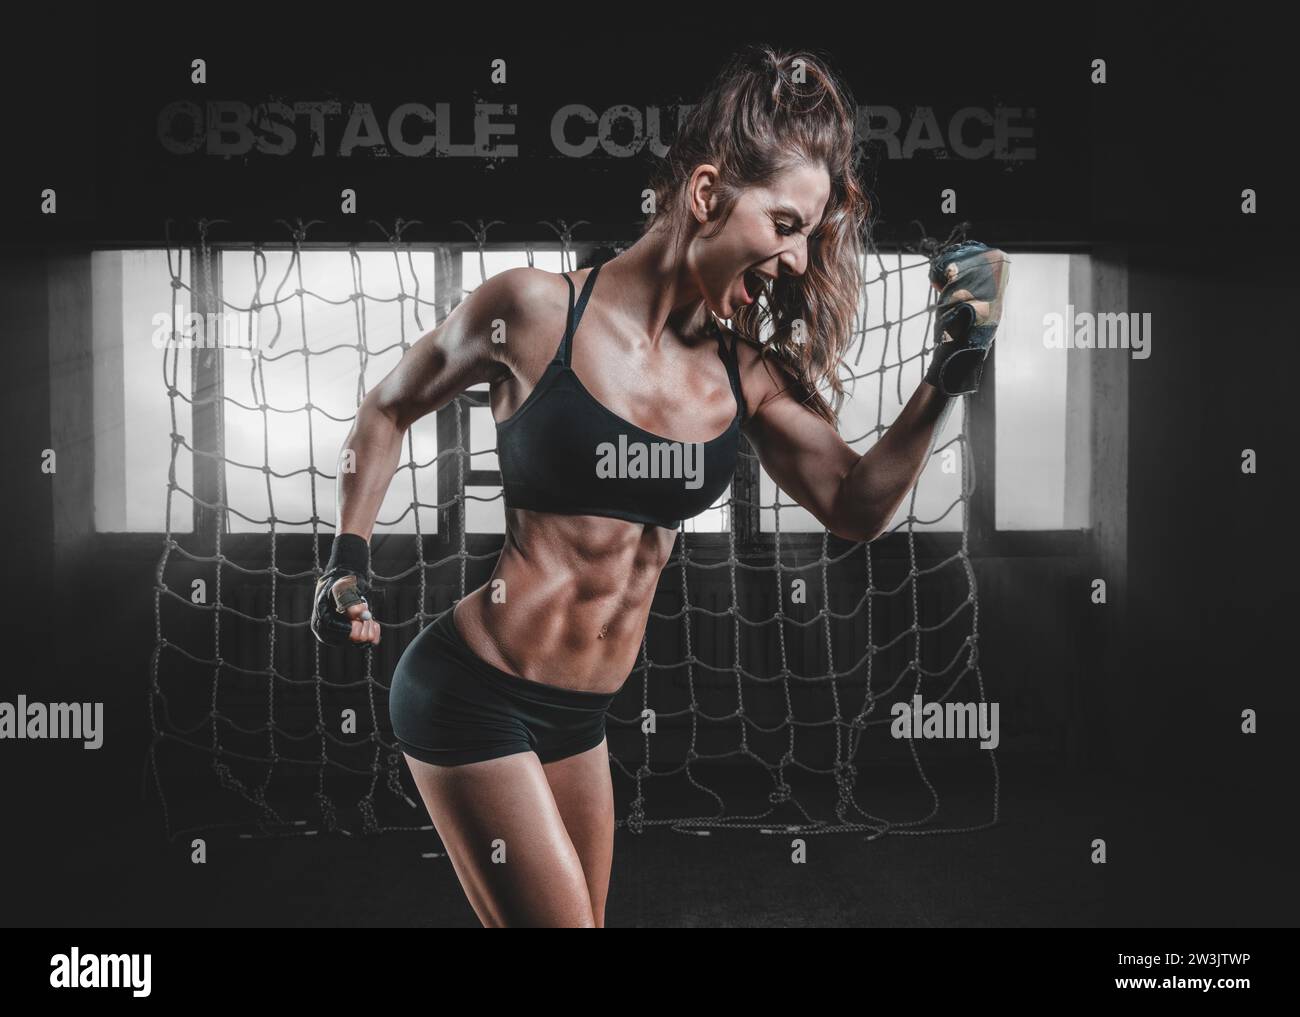 Femme musclée forte fléchissant son biceps après l'entraînement. Le concept de façonnage, de musculation, d'aérobic, d'étirement. Supports mixtes Banque D'Images